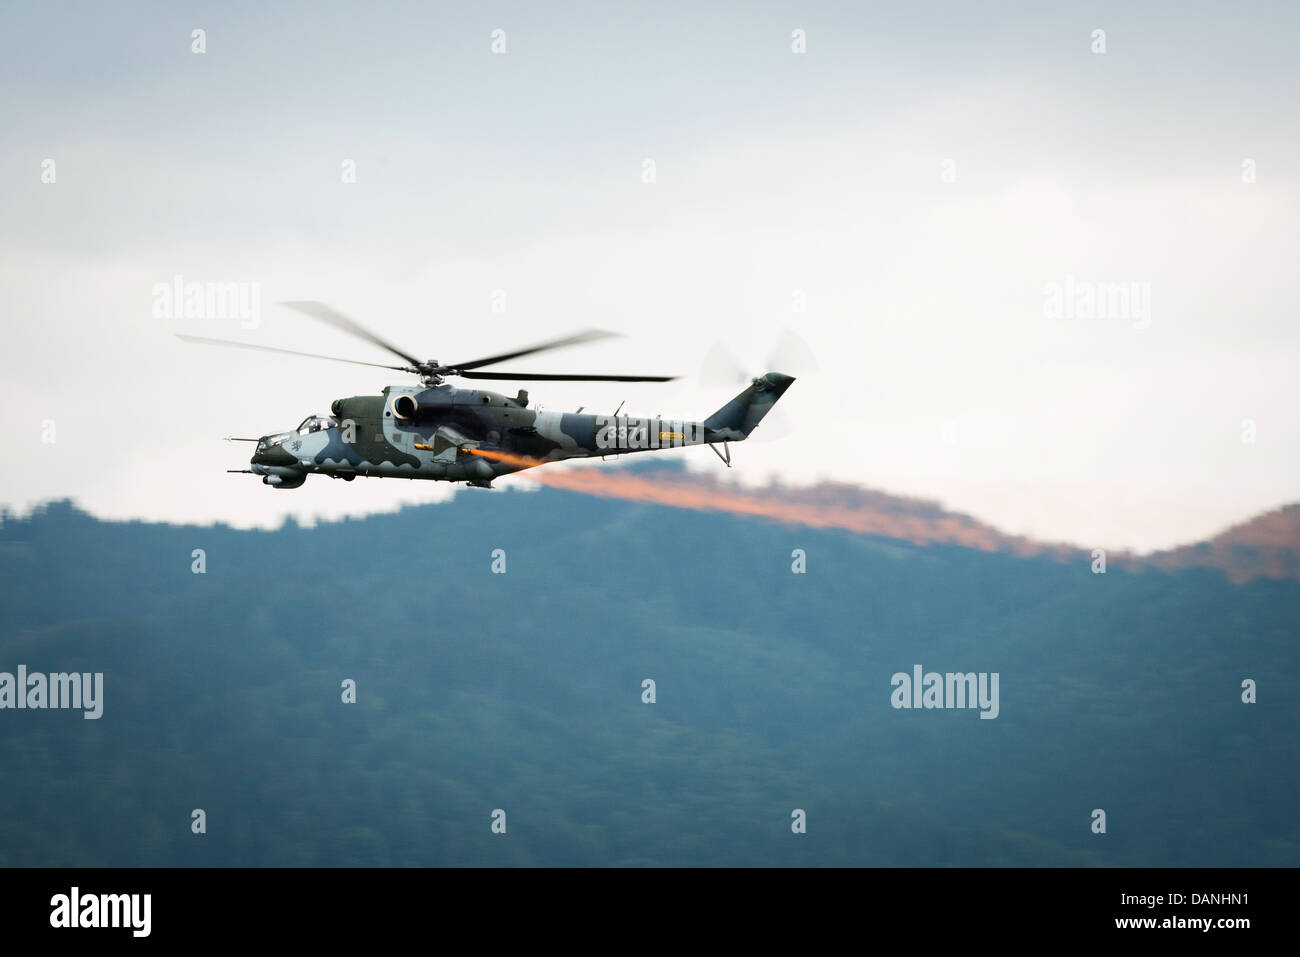 Dynamische Anzeige der Mil Mi-24 von tschechischen Luftwaffe bei Airpower 2013 Airshow in Zeltweg, Österreich, 28. Juni 2013 Stockfoto